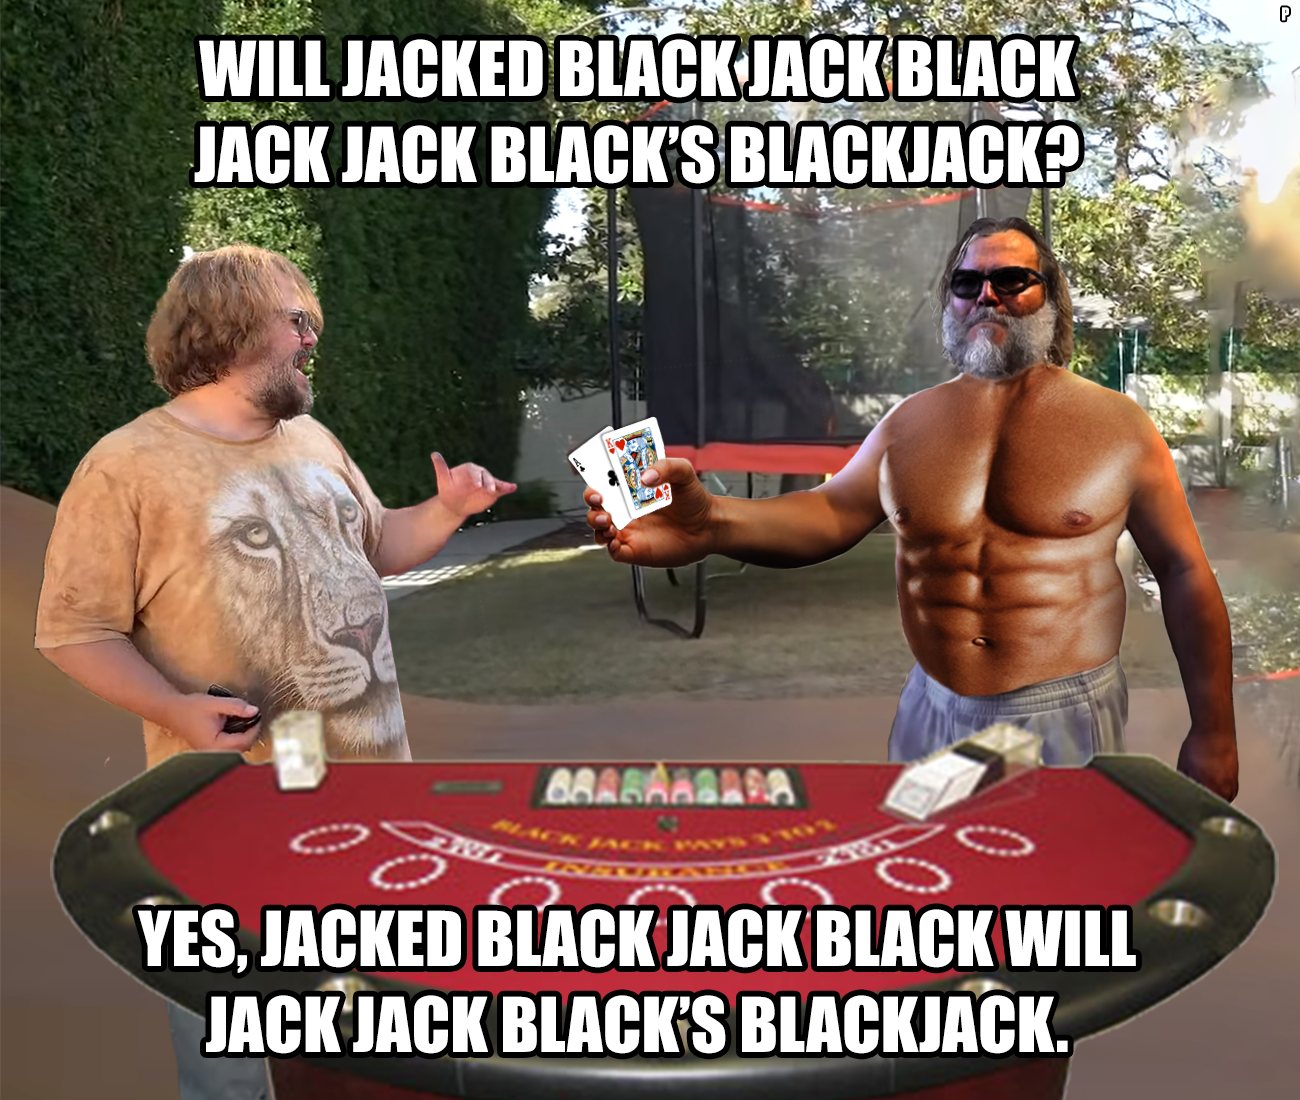 Jack Black Memes - jacked black jack black - Will Jacked Black Jack Black Jack Jack Black'S Blackjack? Braraabara 8 Yes, Jacked Black Jack Black Will Jack Jack Black'S Blackjack. D